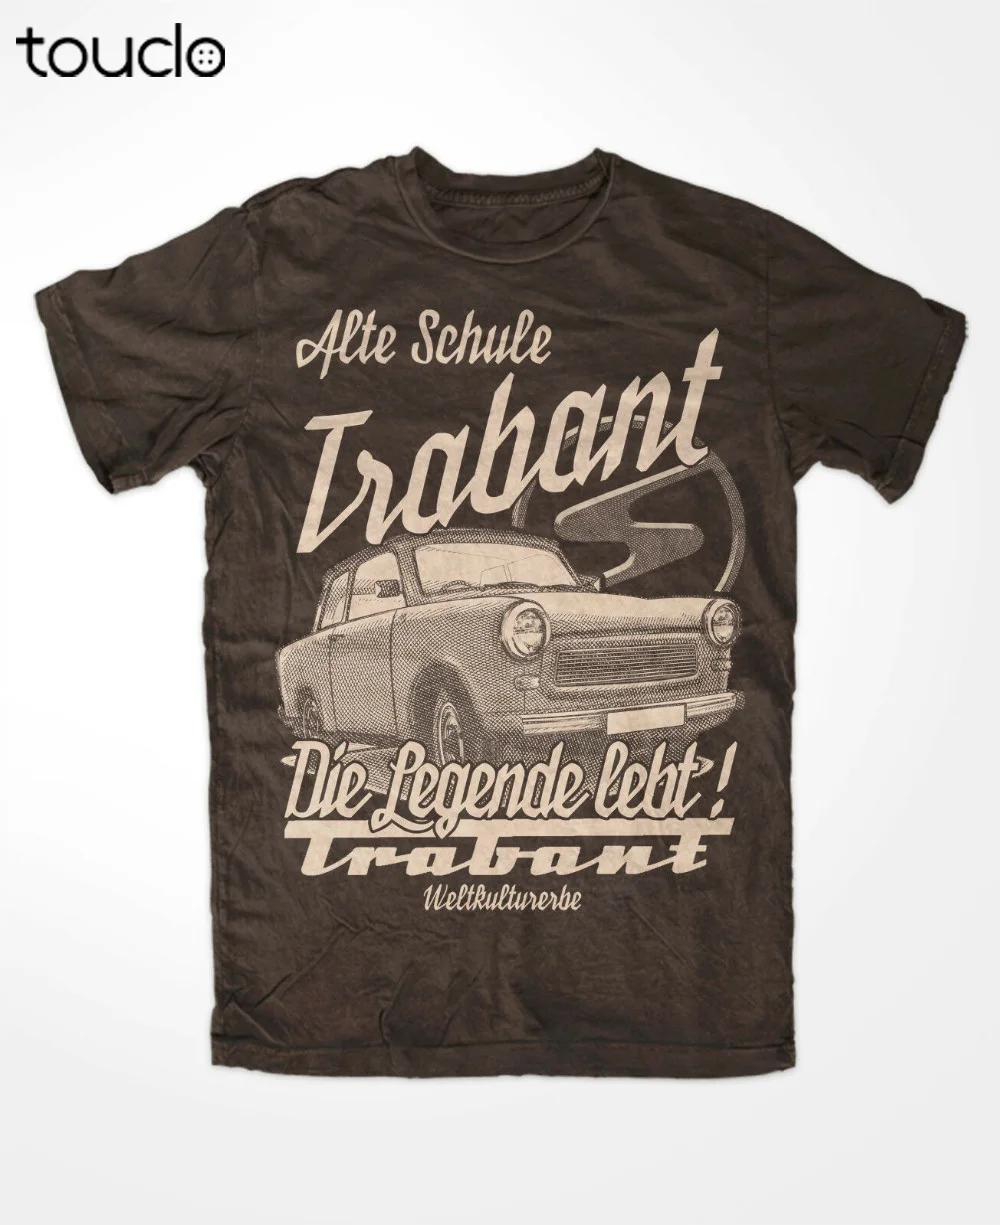 Trabant Die Legende T-Shirt Braun S51 Ddr Trabant Ostkult Weltkulturerbe P50Novelty for Printed Short Sleeve Men'S Tops T Shirt